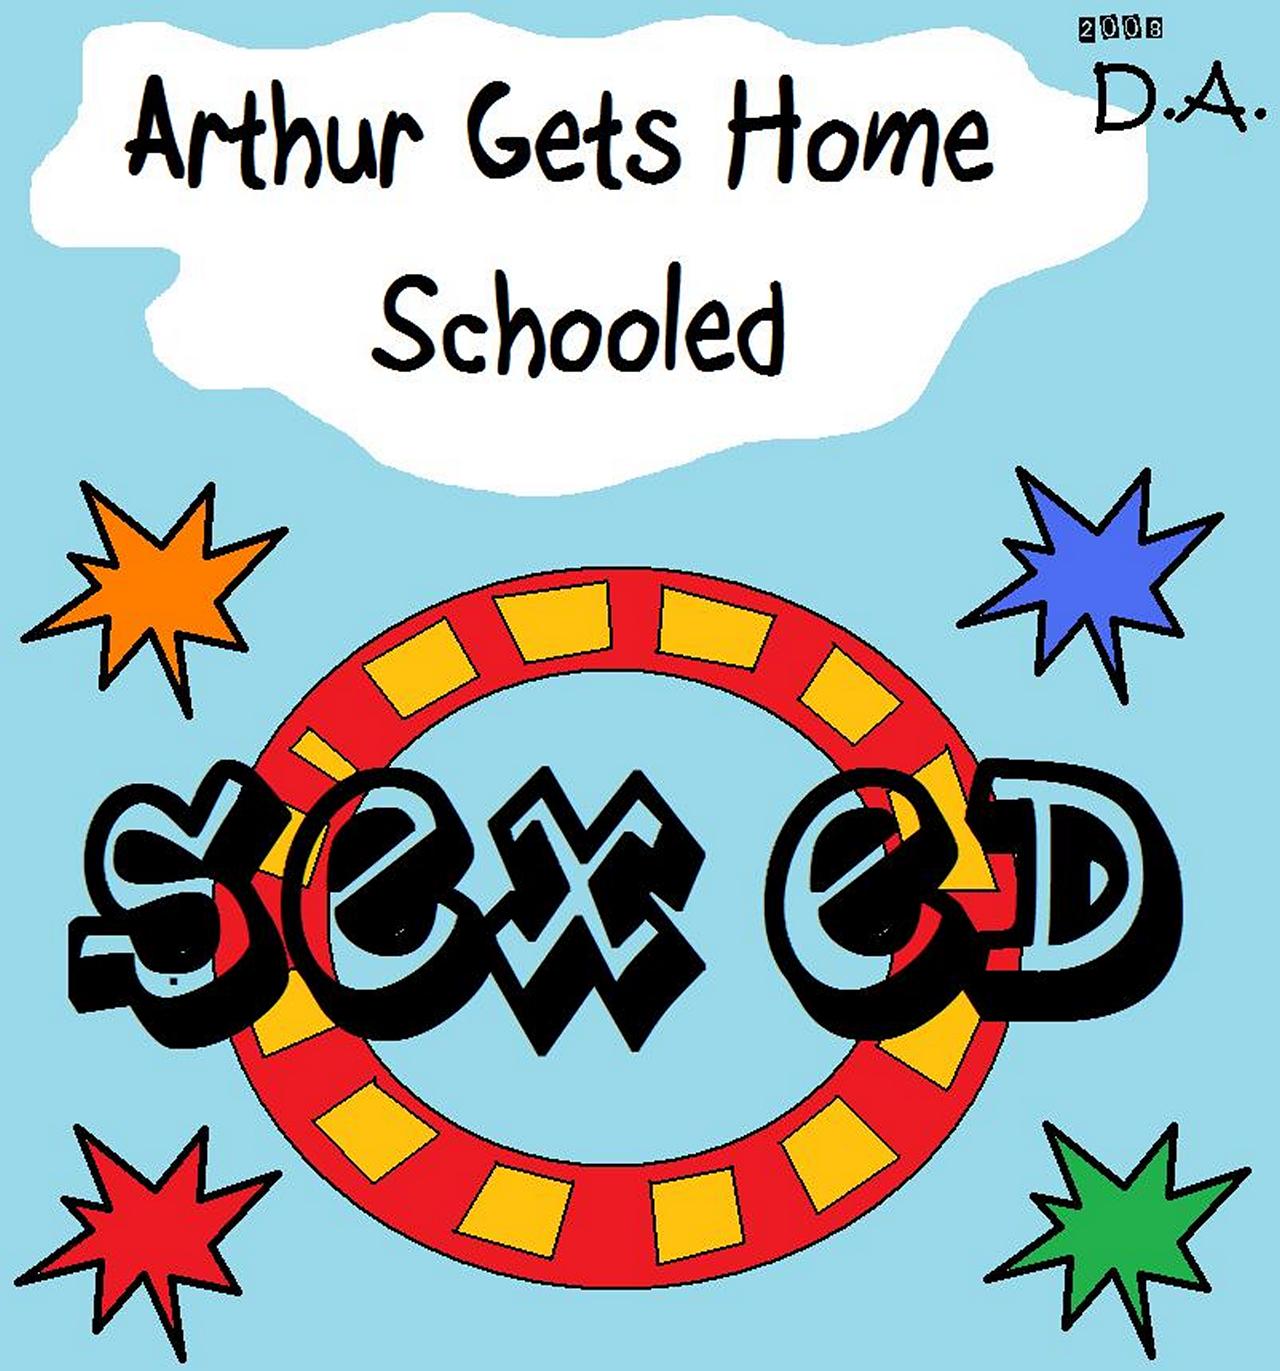 Arthur Read Porn - Arthur Gets Home Schooled - Sex Ed comic porn - HD Porn Comics